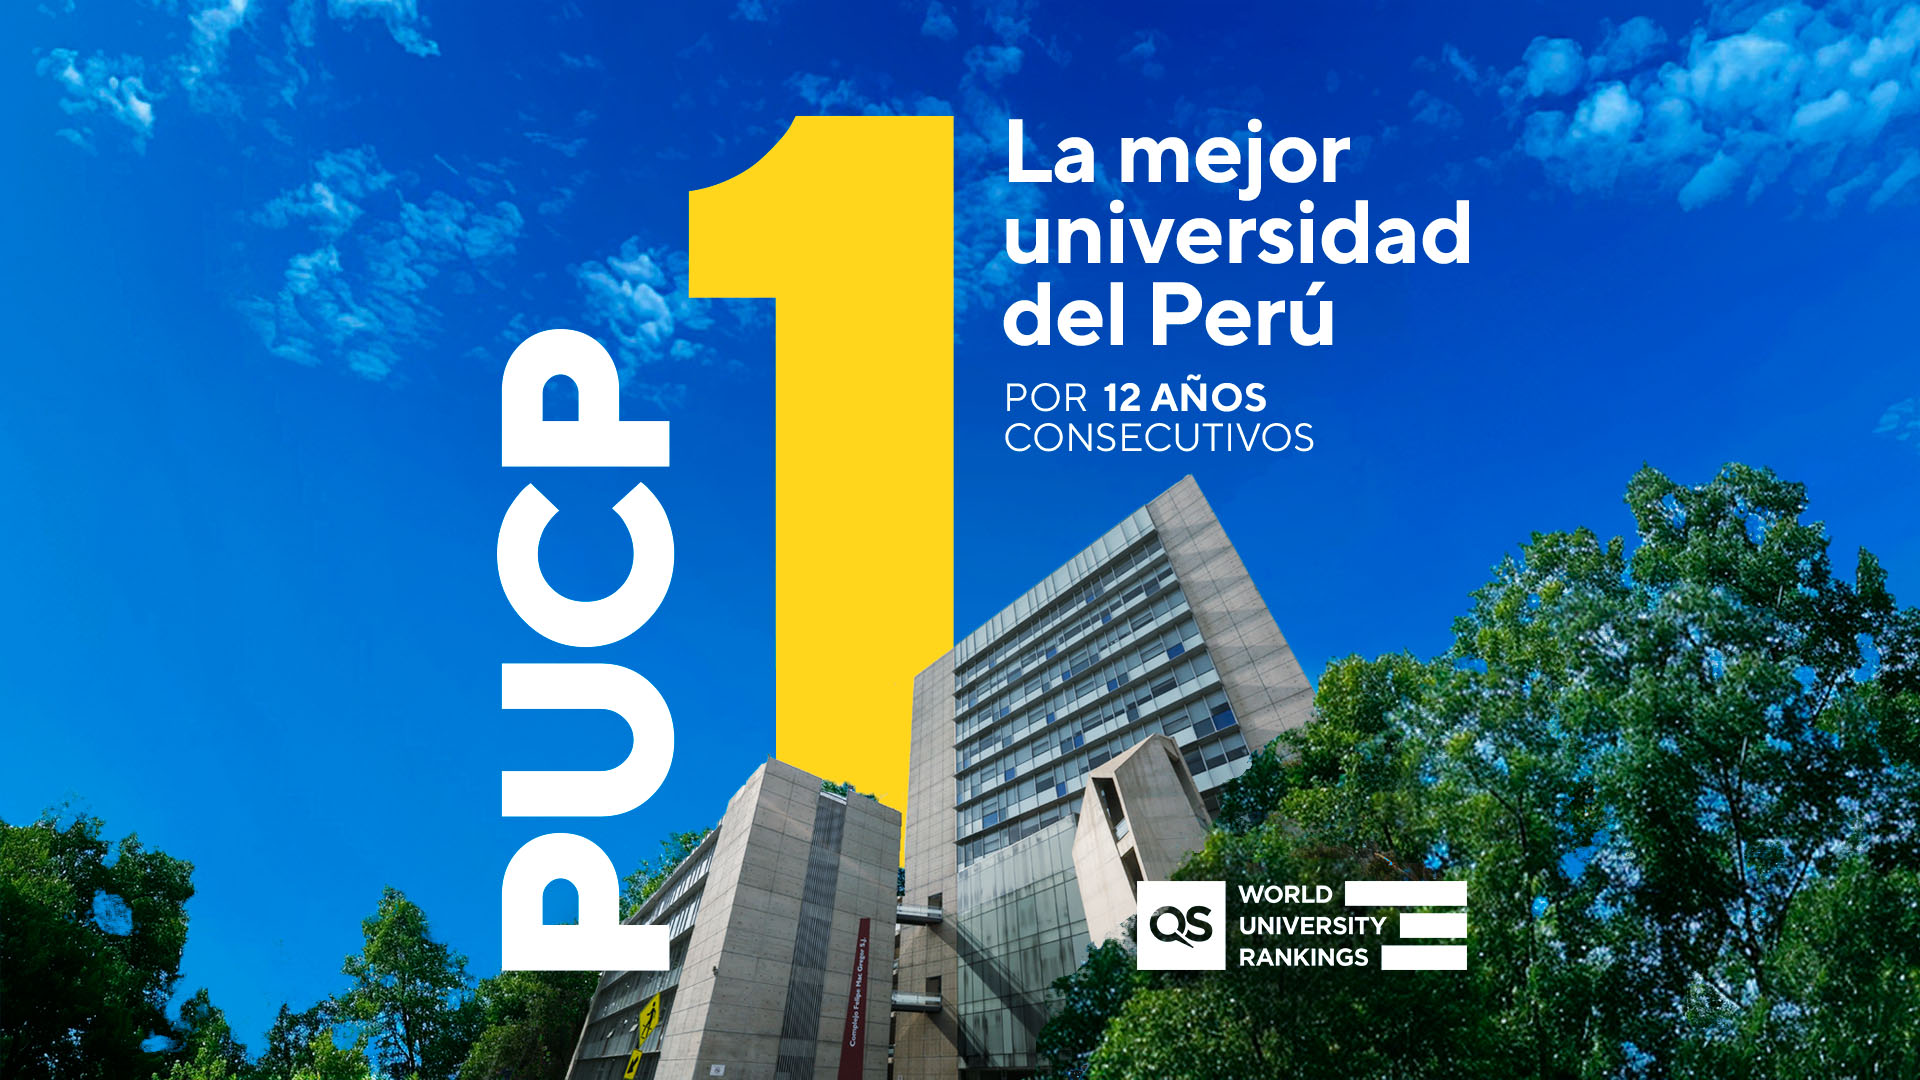 QS World University Ranking 2025: la PUCP consolida su liderazgo nacional y se posiciona entre las 11 primeras universidades de Latinoamérica y el Caribe, y en las 9 primeras de Sudamérica